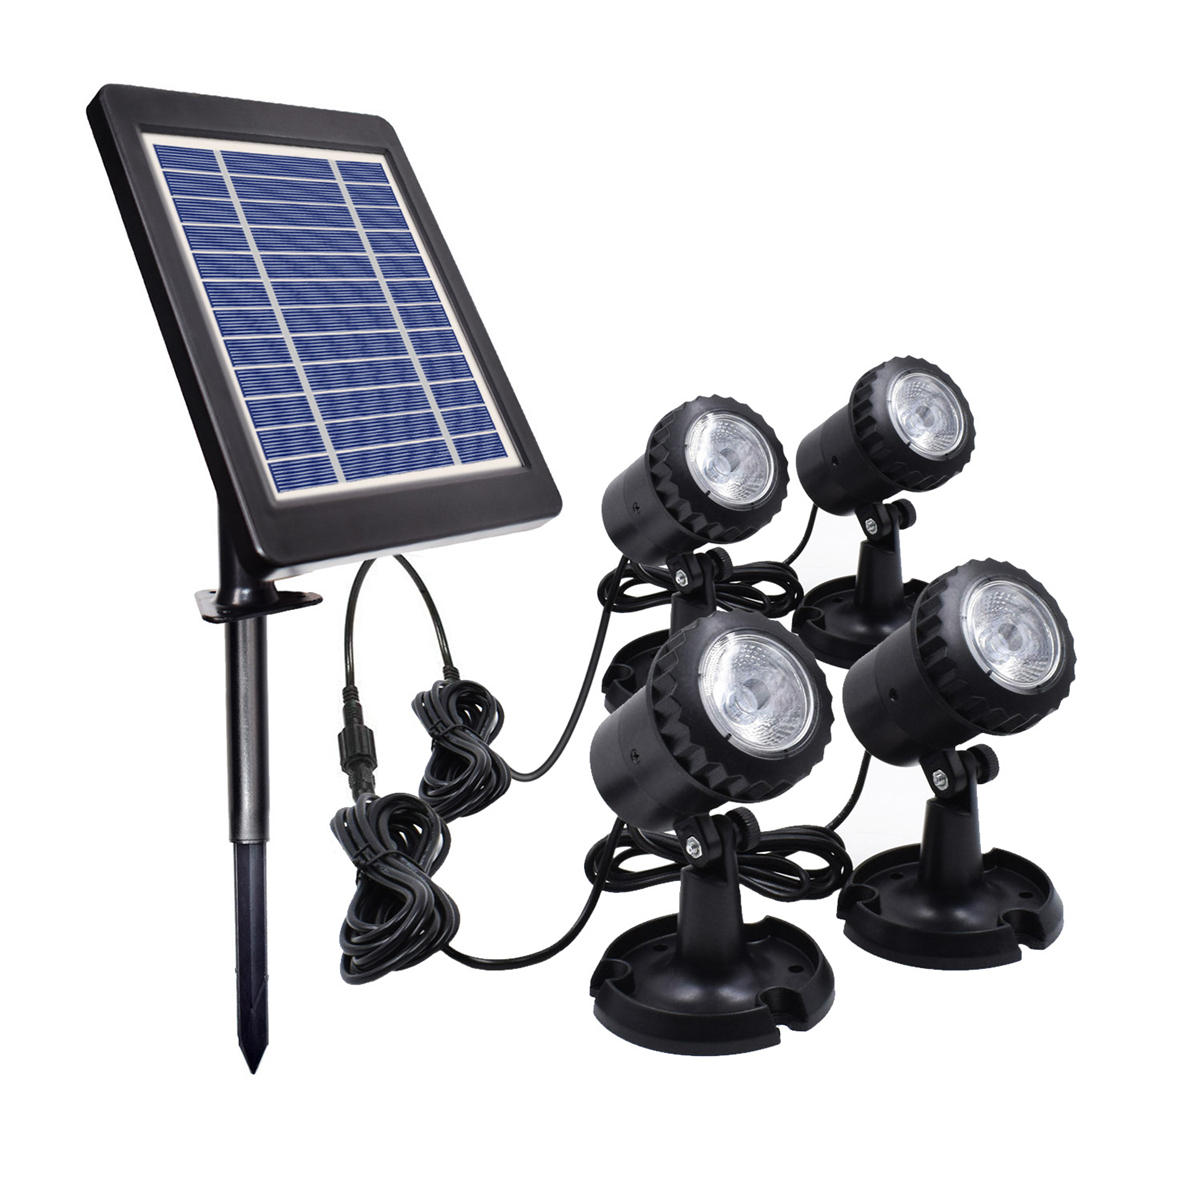 IP68 4 в 1 водонепроницаемые подводные фонтанные лампы на солнечных батареях LED-прожекторы с зелеными/синими/белыми лампами для открытых амфибийных газонов, бассейнов, садов, тропинок и аквариумов.